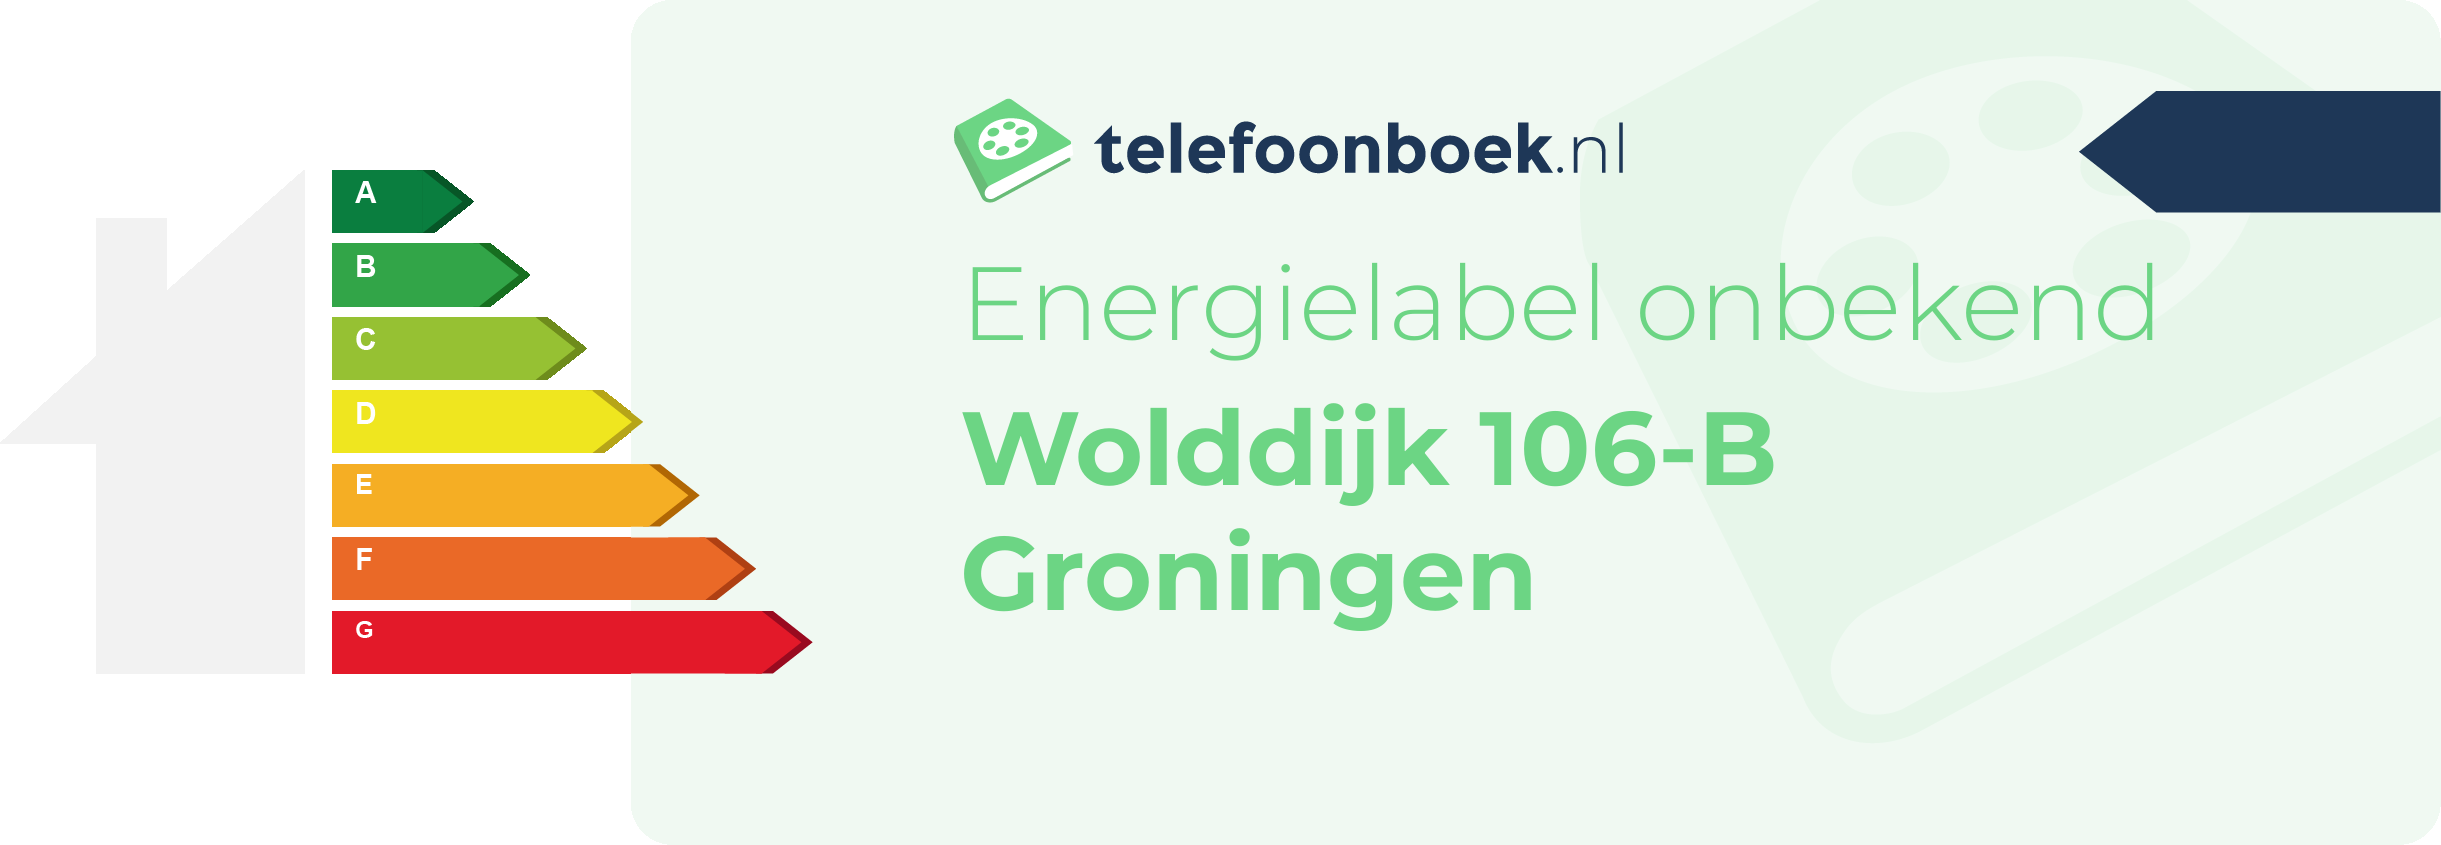 Energielabel Wolddijk 106-B Groningen